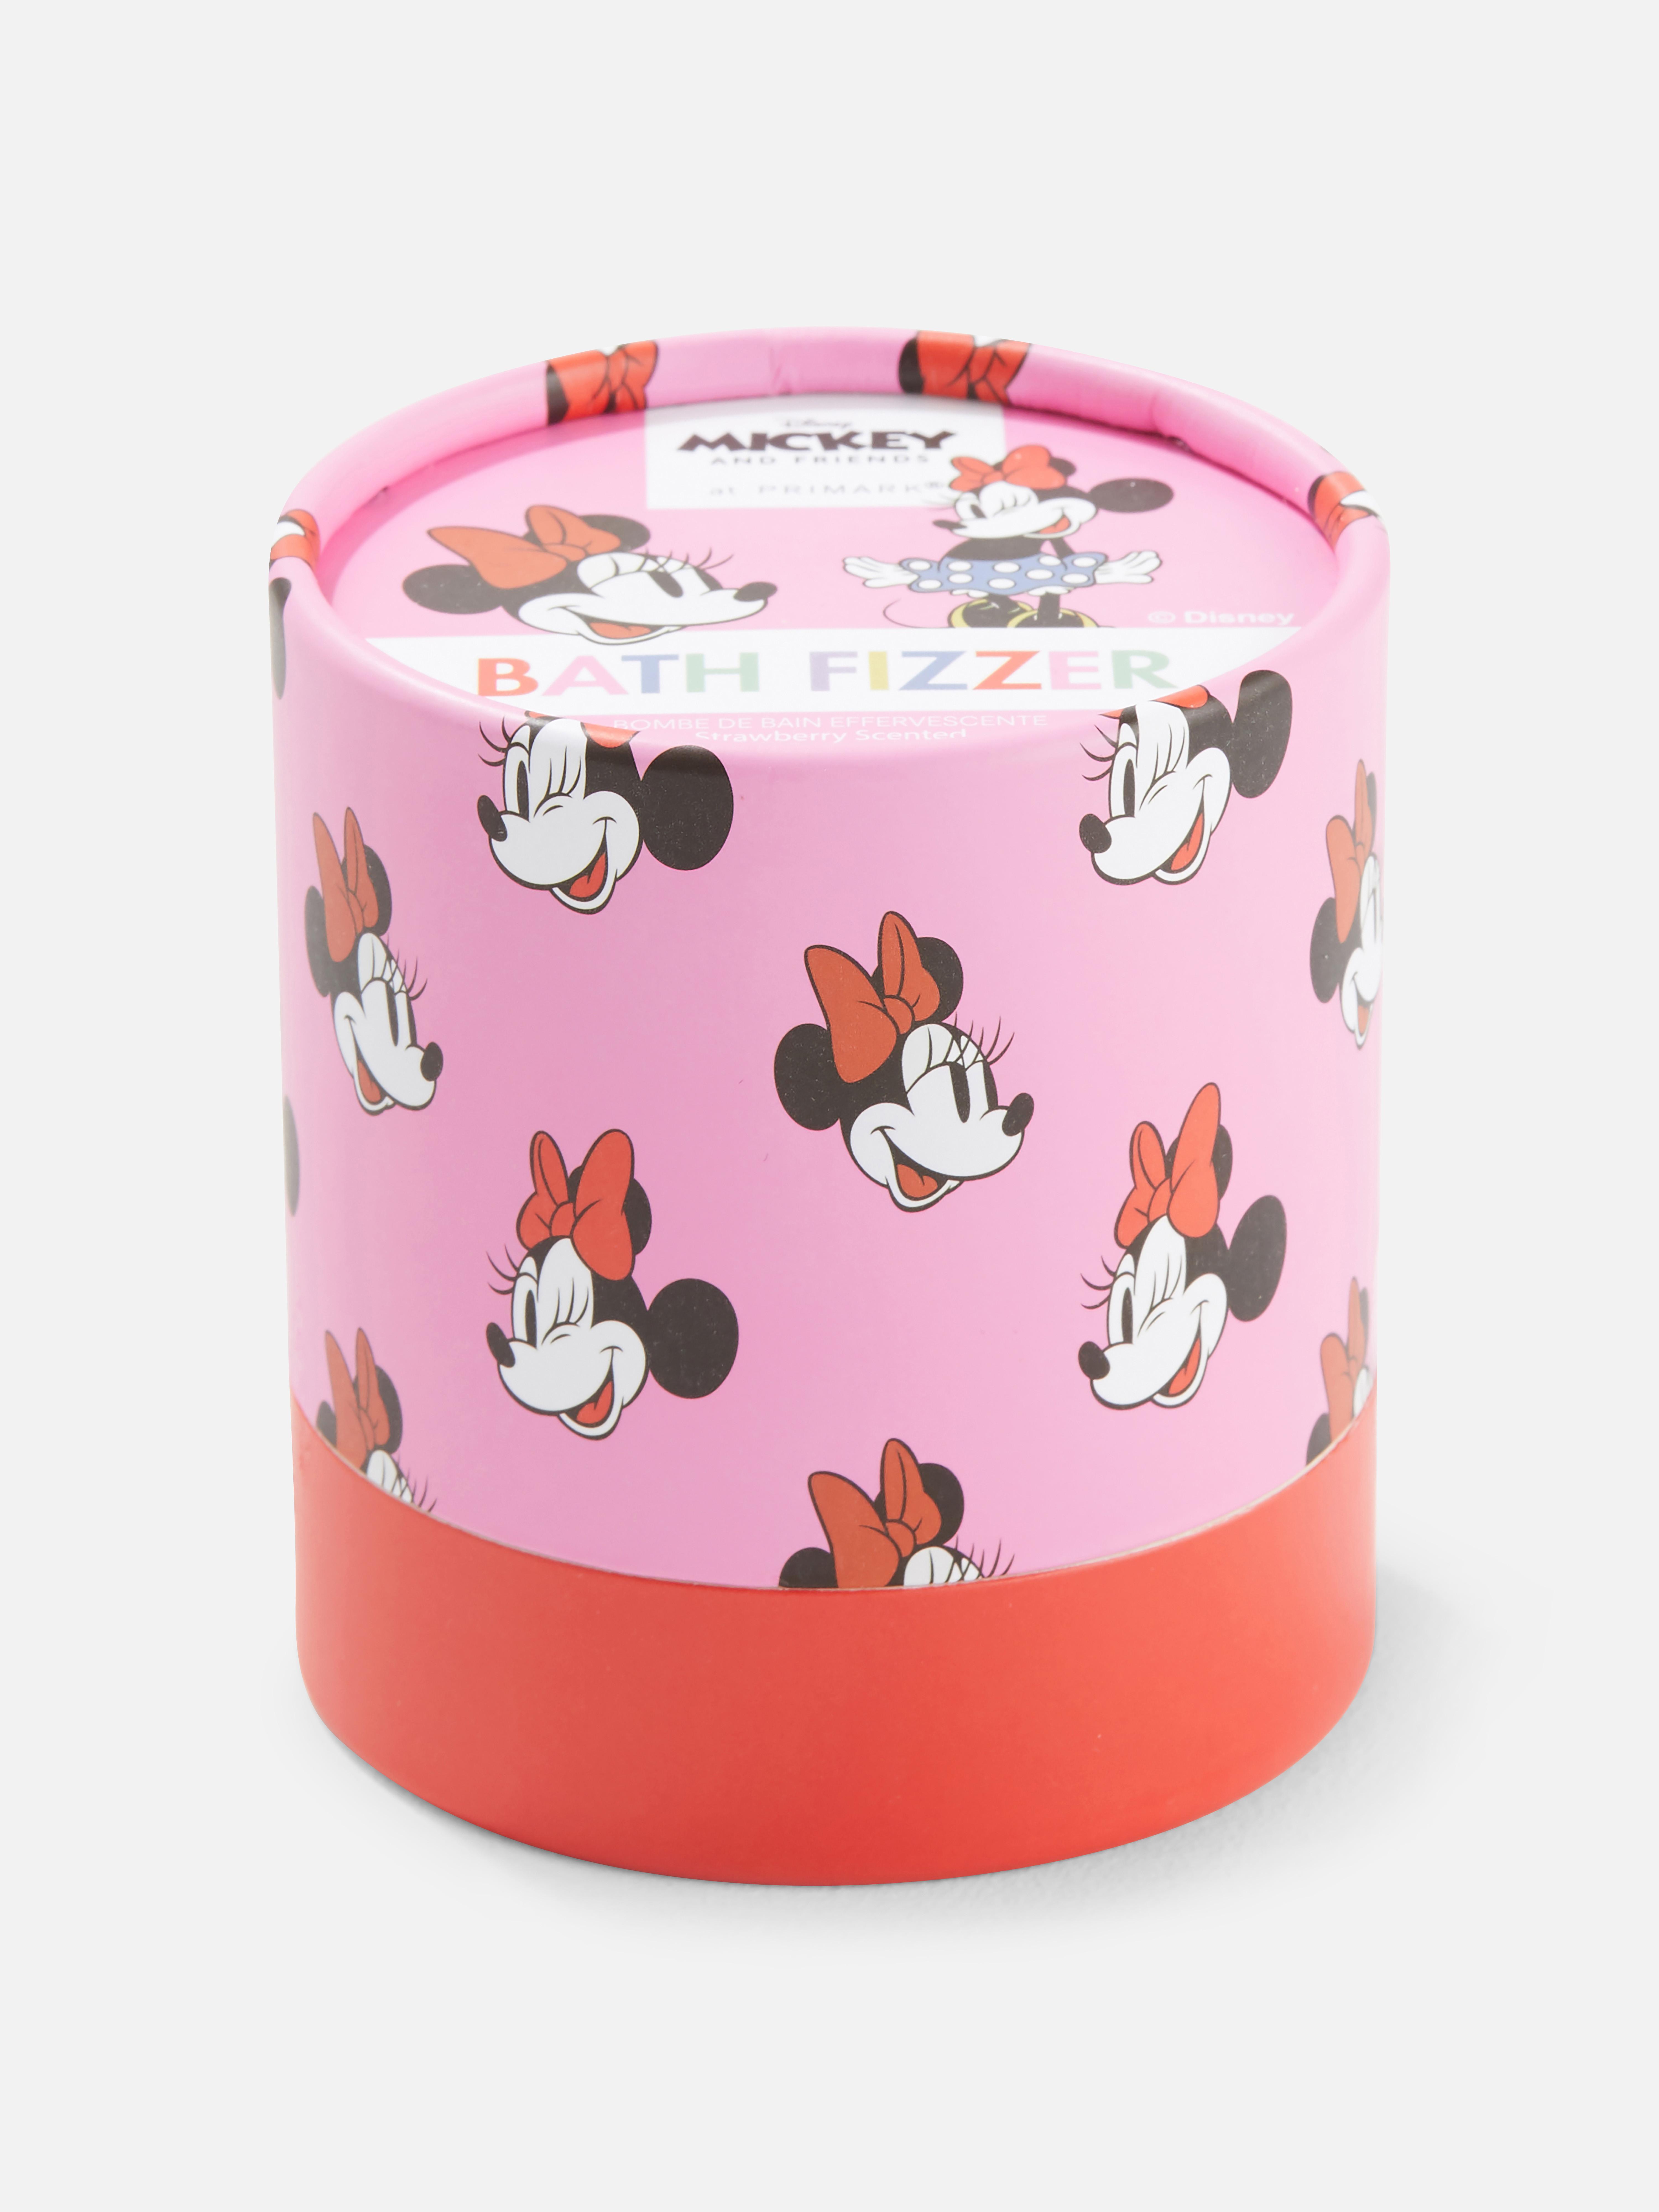 Disney's Mickey and Friends Strawberry Bath Fizzer